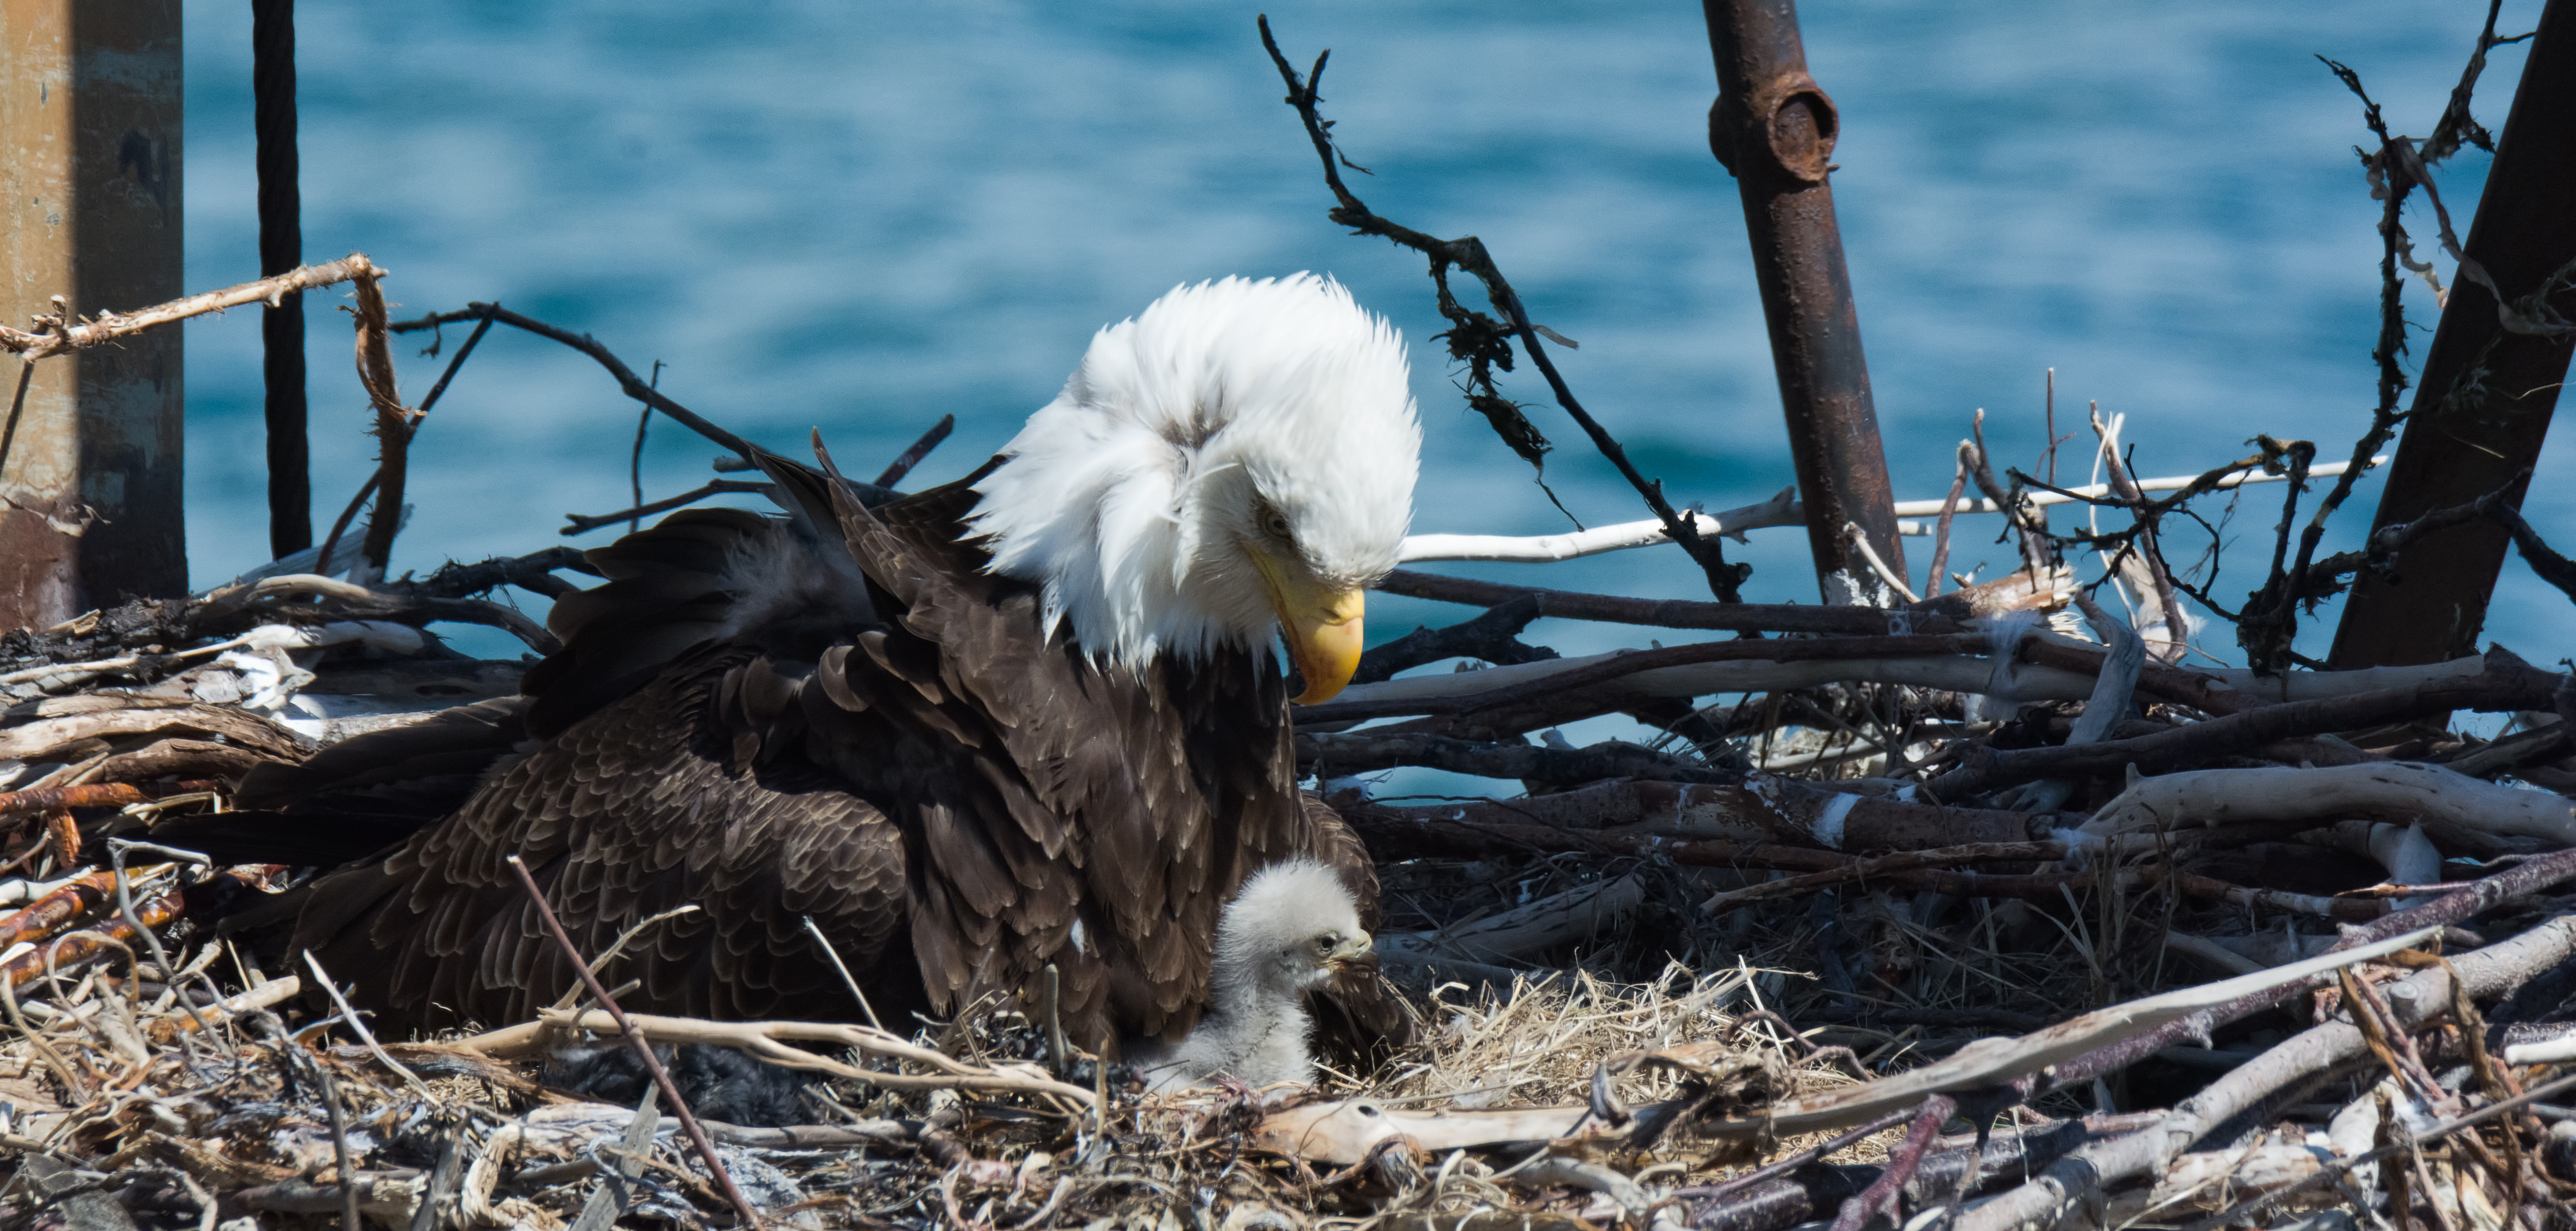 Bald eagle feeding nestling